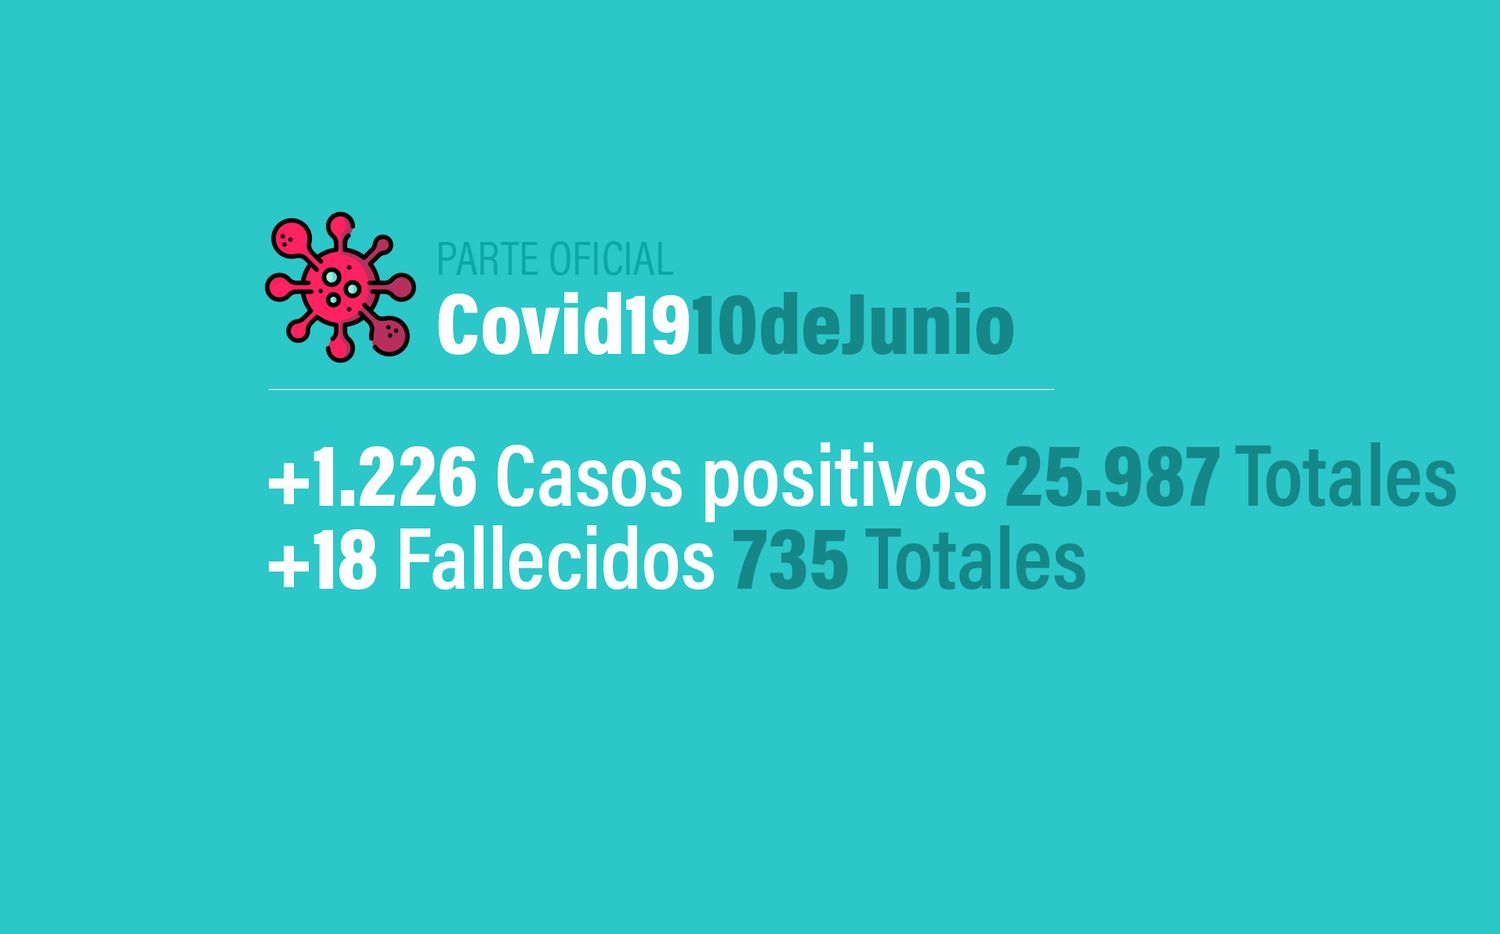 Coronavirus en Argentina: 1226 nuevos casos, 25987 confirmados y 735 muertes, al 10 de junio